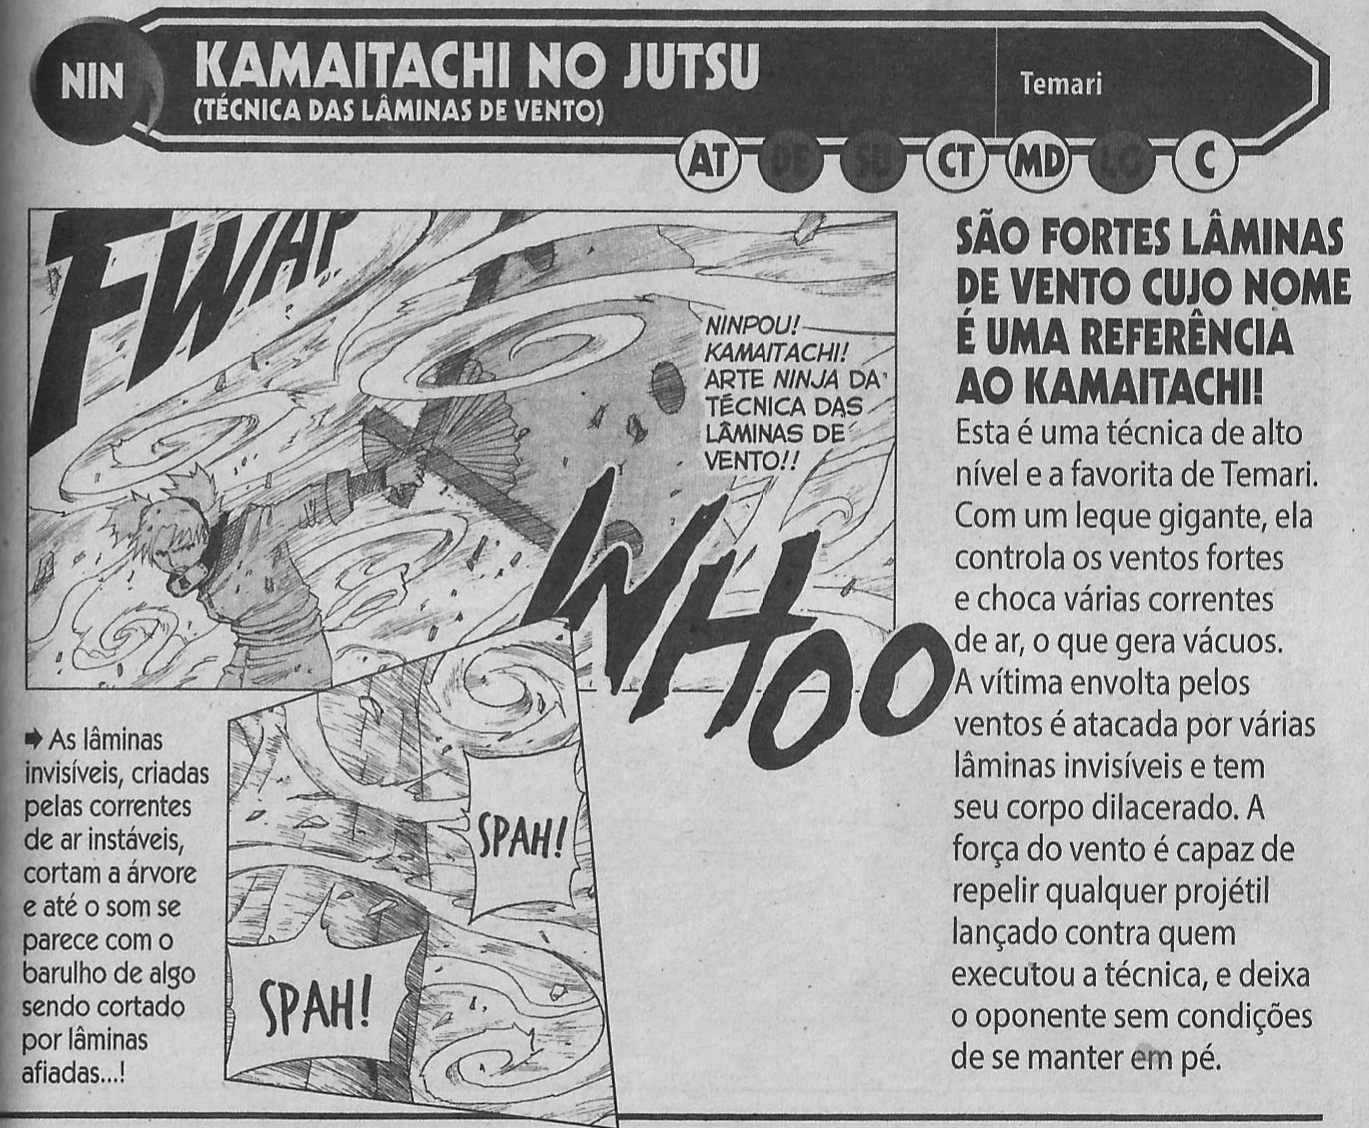 Diga algo mais absurdo sobre Naruto do que o membro anterior - Página 3 20220125